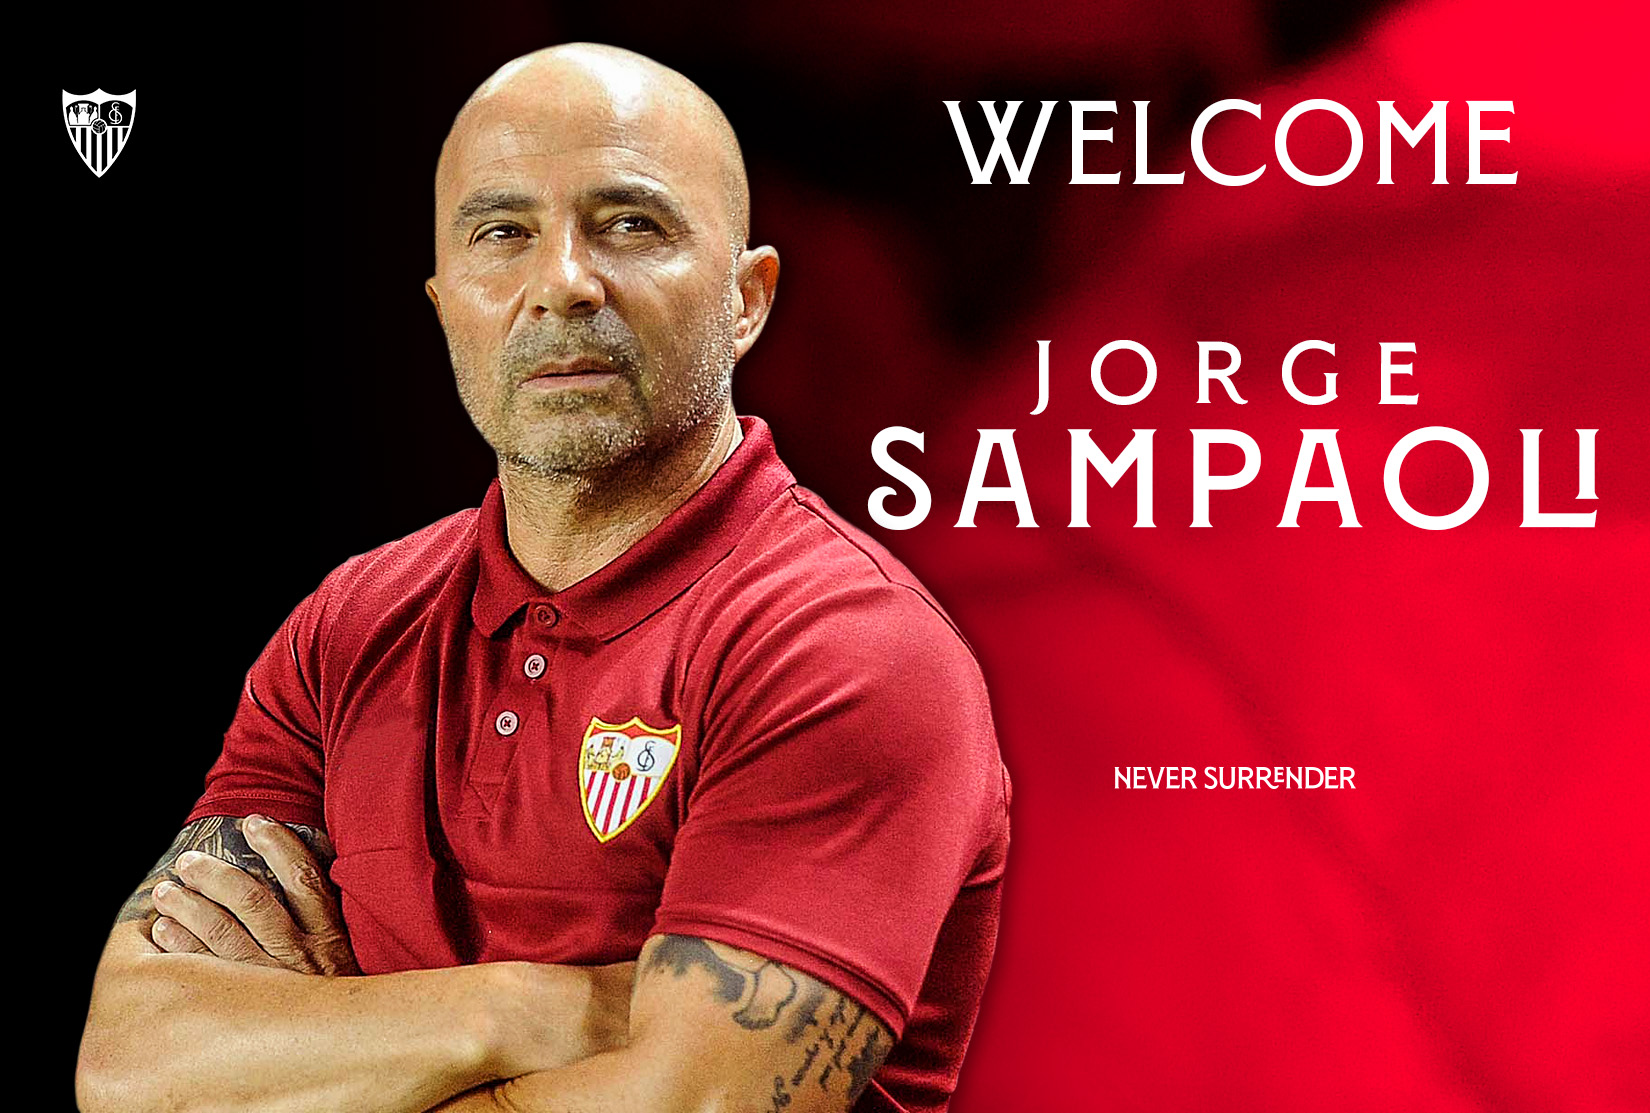 Welcome, Sampaoli